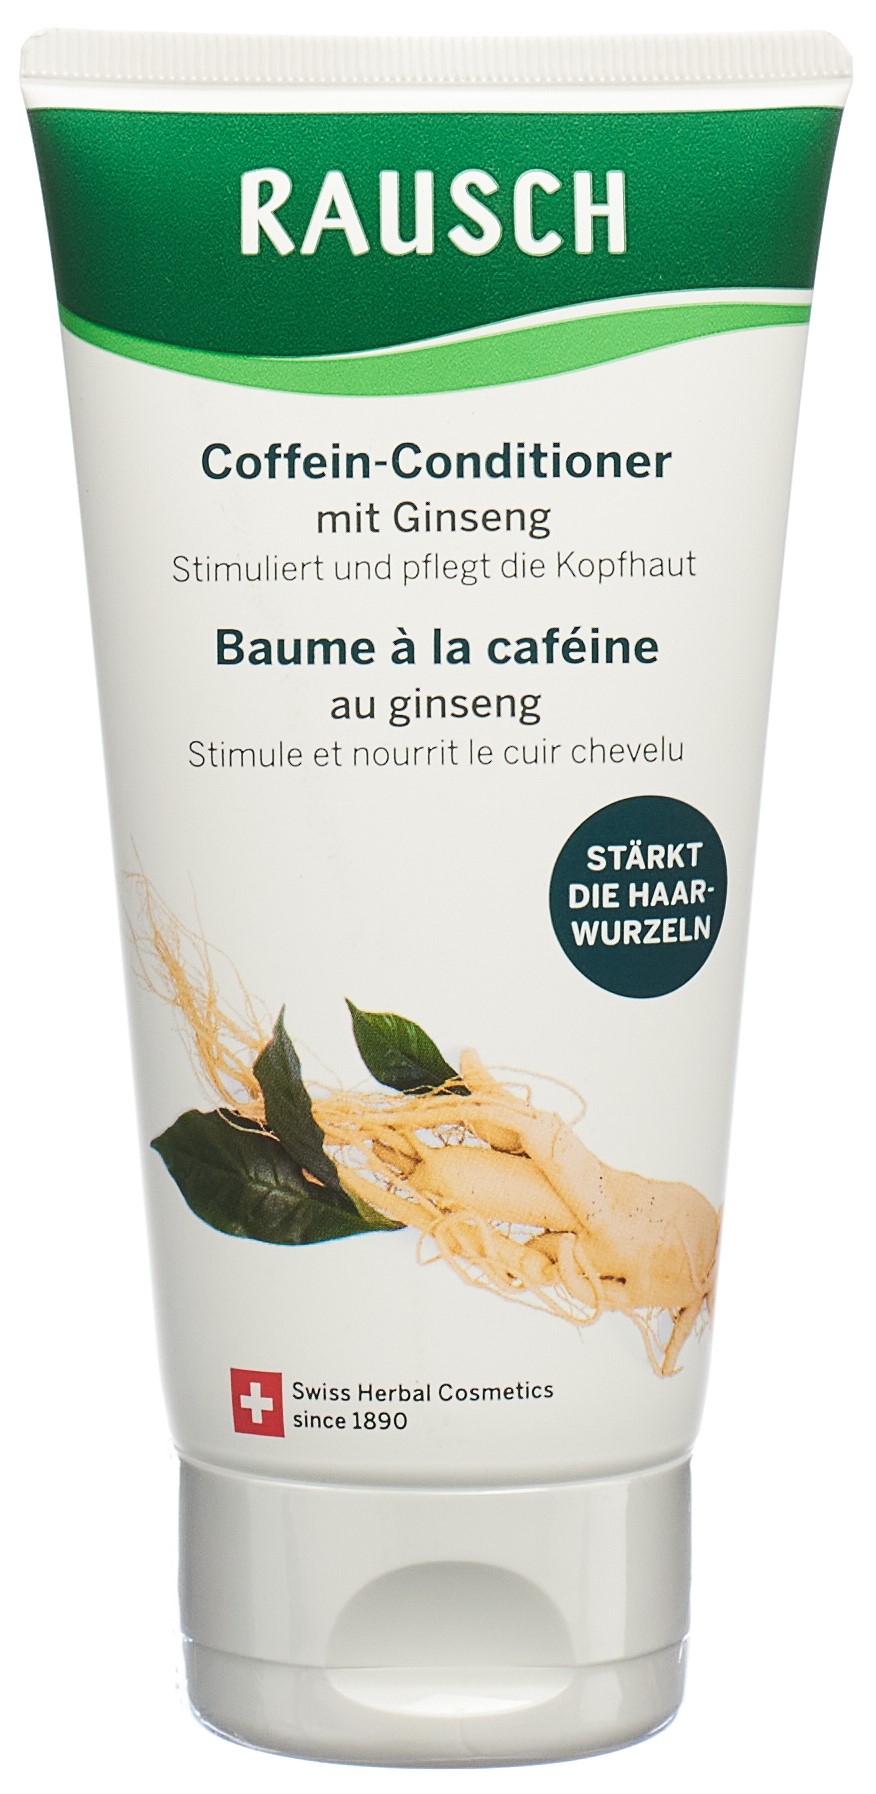 RAUSCH Coffein-Conditioner Ginseng Fl 150 ml